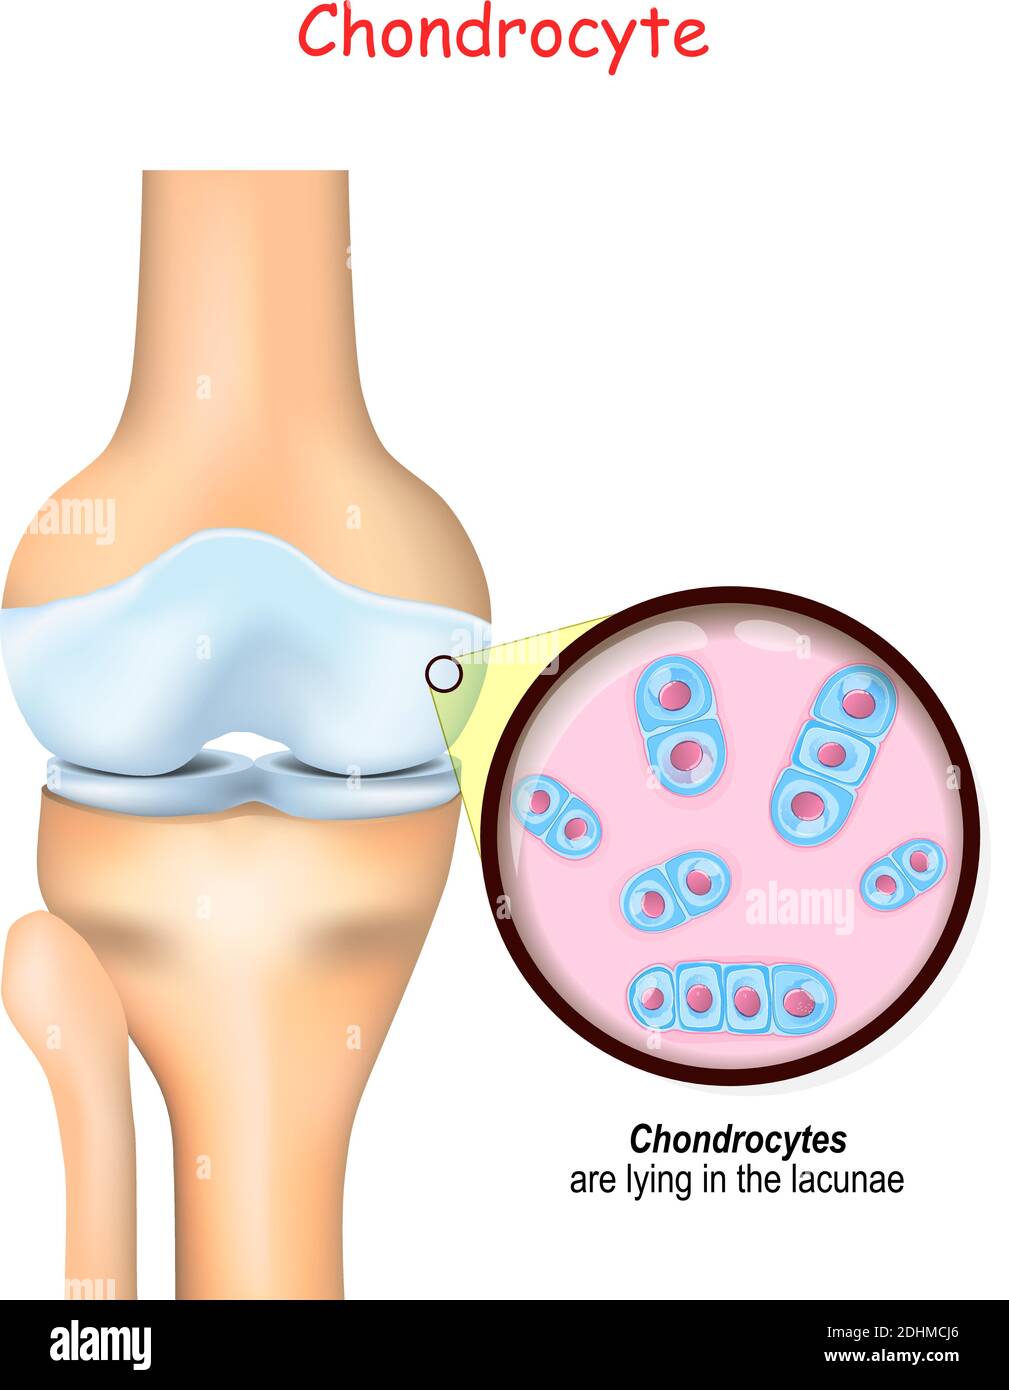 Knie und Nahaufnahme der Zellen des Knorpels. Chondrozyten liegen in den Lakunen und produzieren und pflegen die knorpelige Matrix, und Kollagen. Stock Vektor